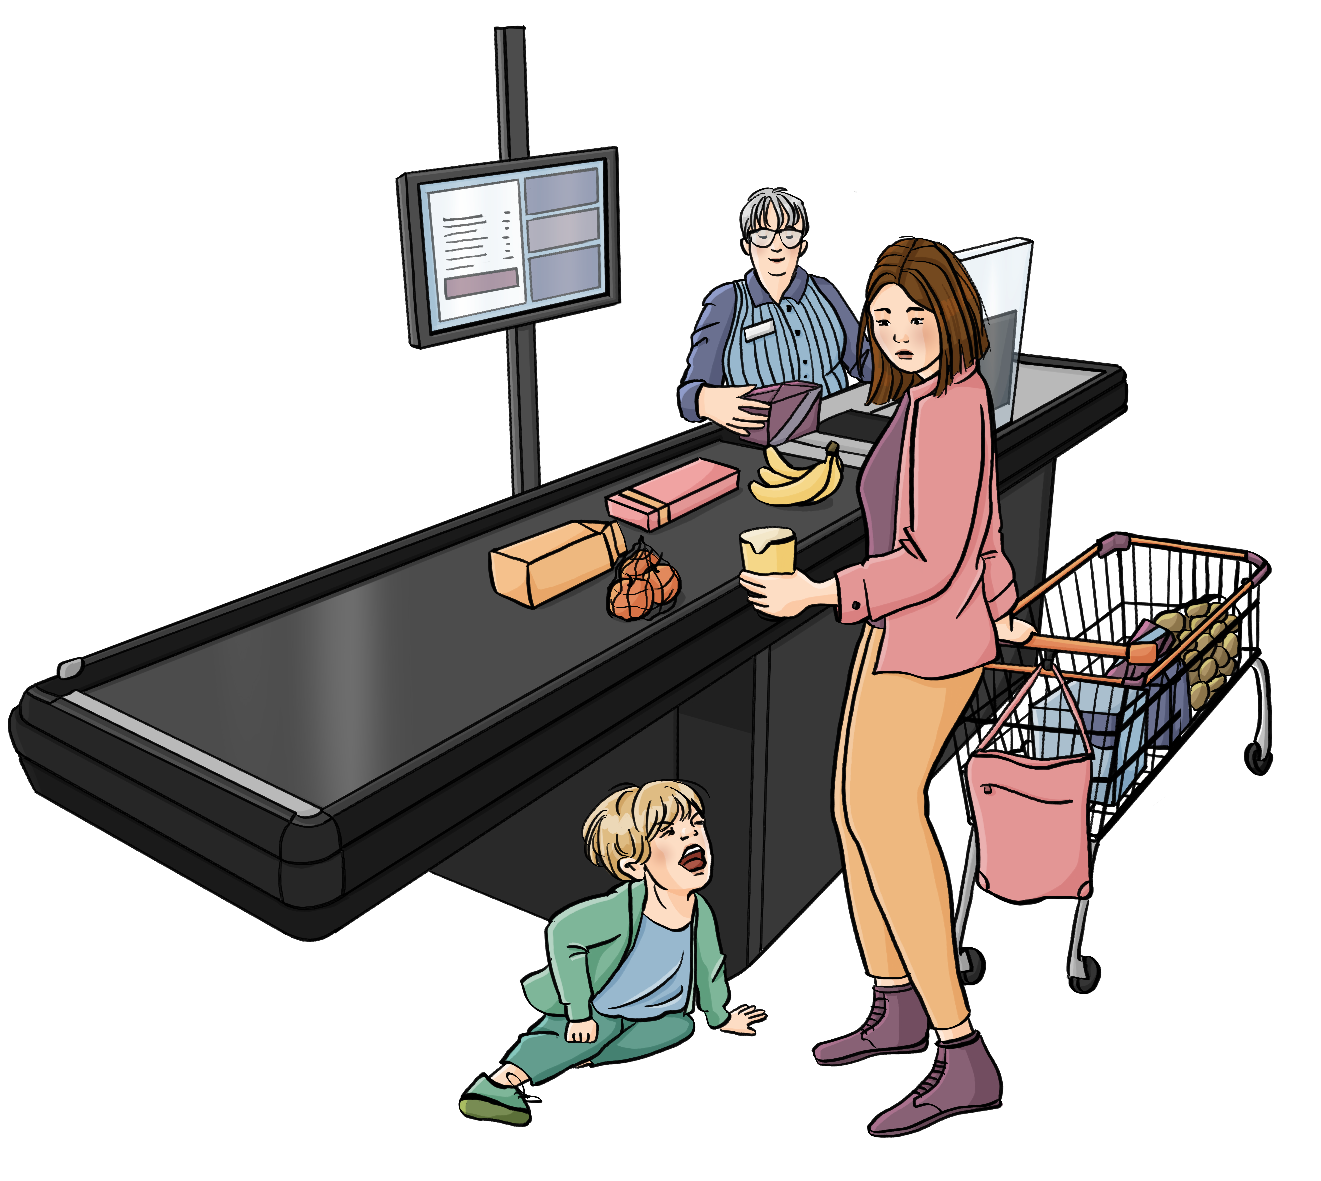 Eine Frau sitzt hinter einer Supermarktkasse, eine andere Frau legt Waren auf das Band. Neben ihr steht ein Einkaufswagen. Ein Kind sitzt auf dem Boden und schaut wütend. 